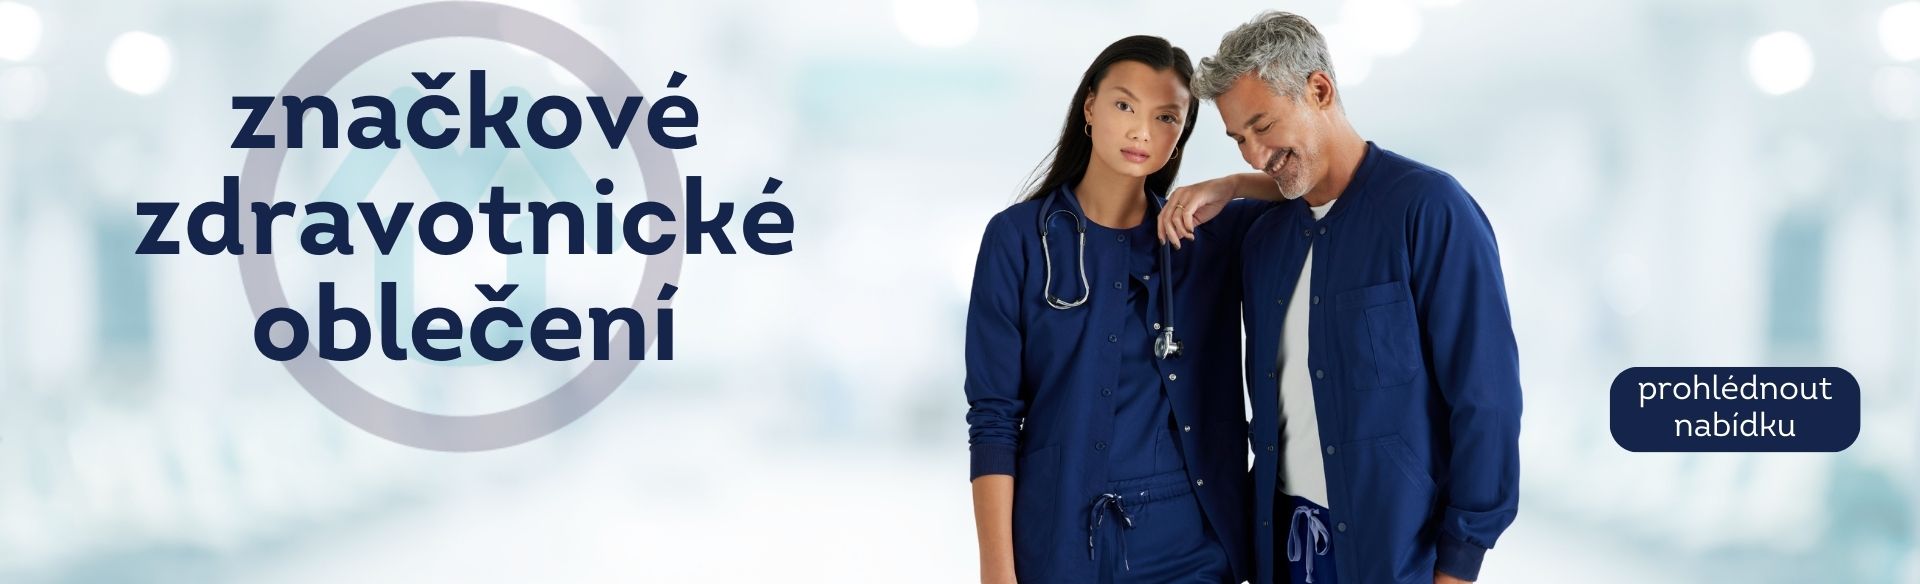 Lékařské oděvy pro profesionály: kvalita a styl v jednom - slide 2